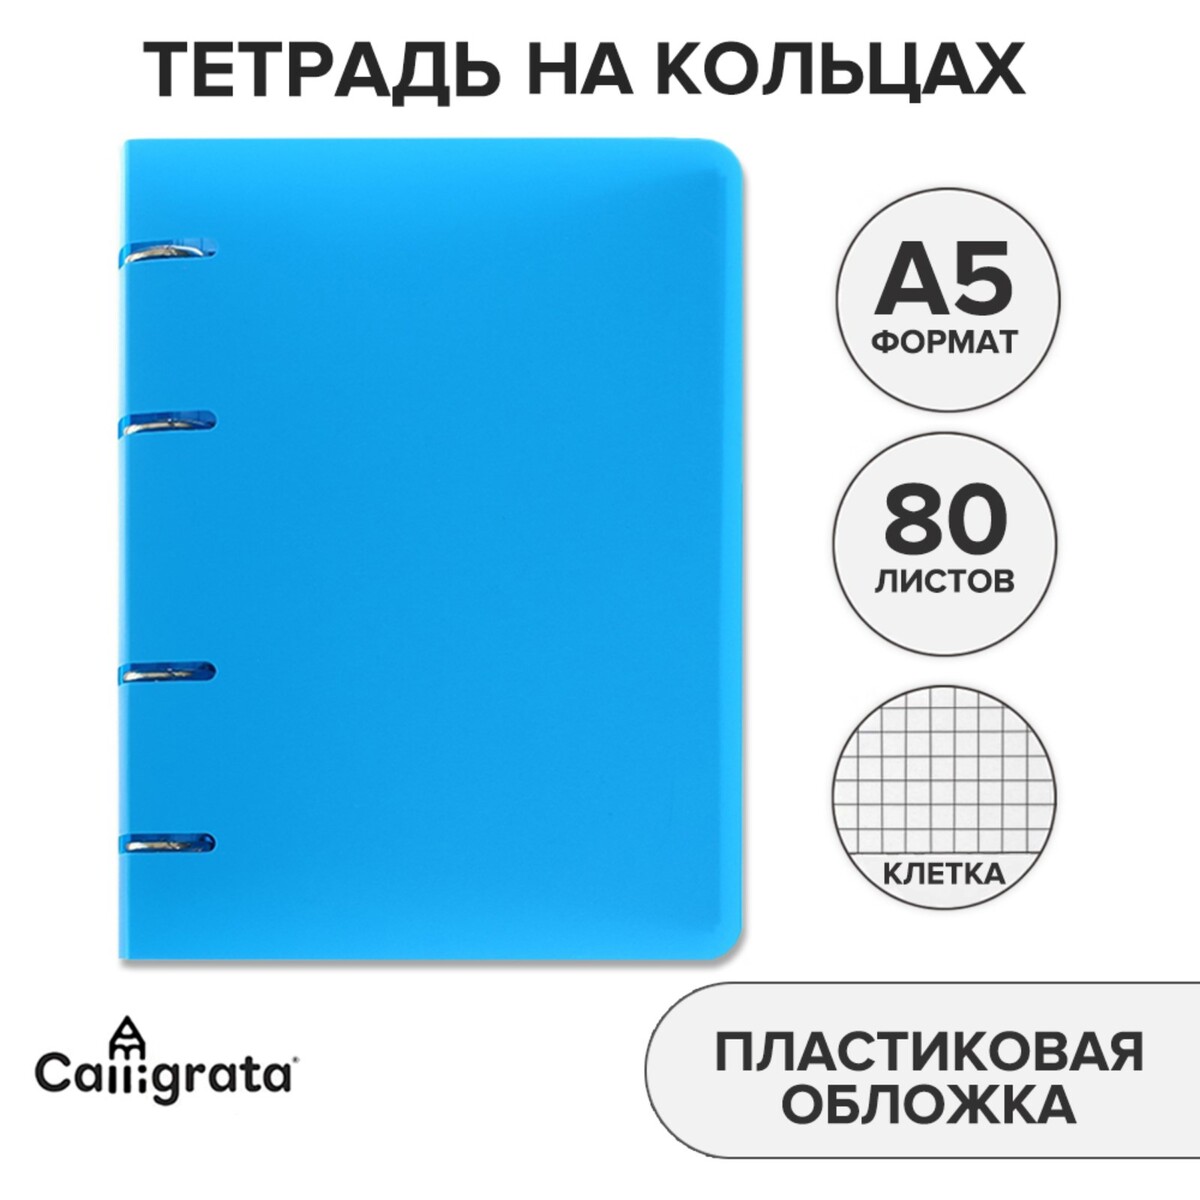 фото Тетрадь на кольцах а5 calligrata, в клетку, 80 листов, пластиковая обложка, блок офсет, голубая